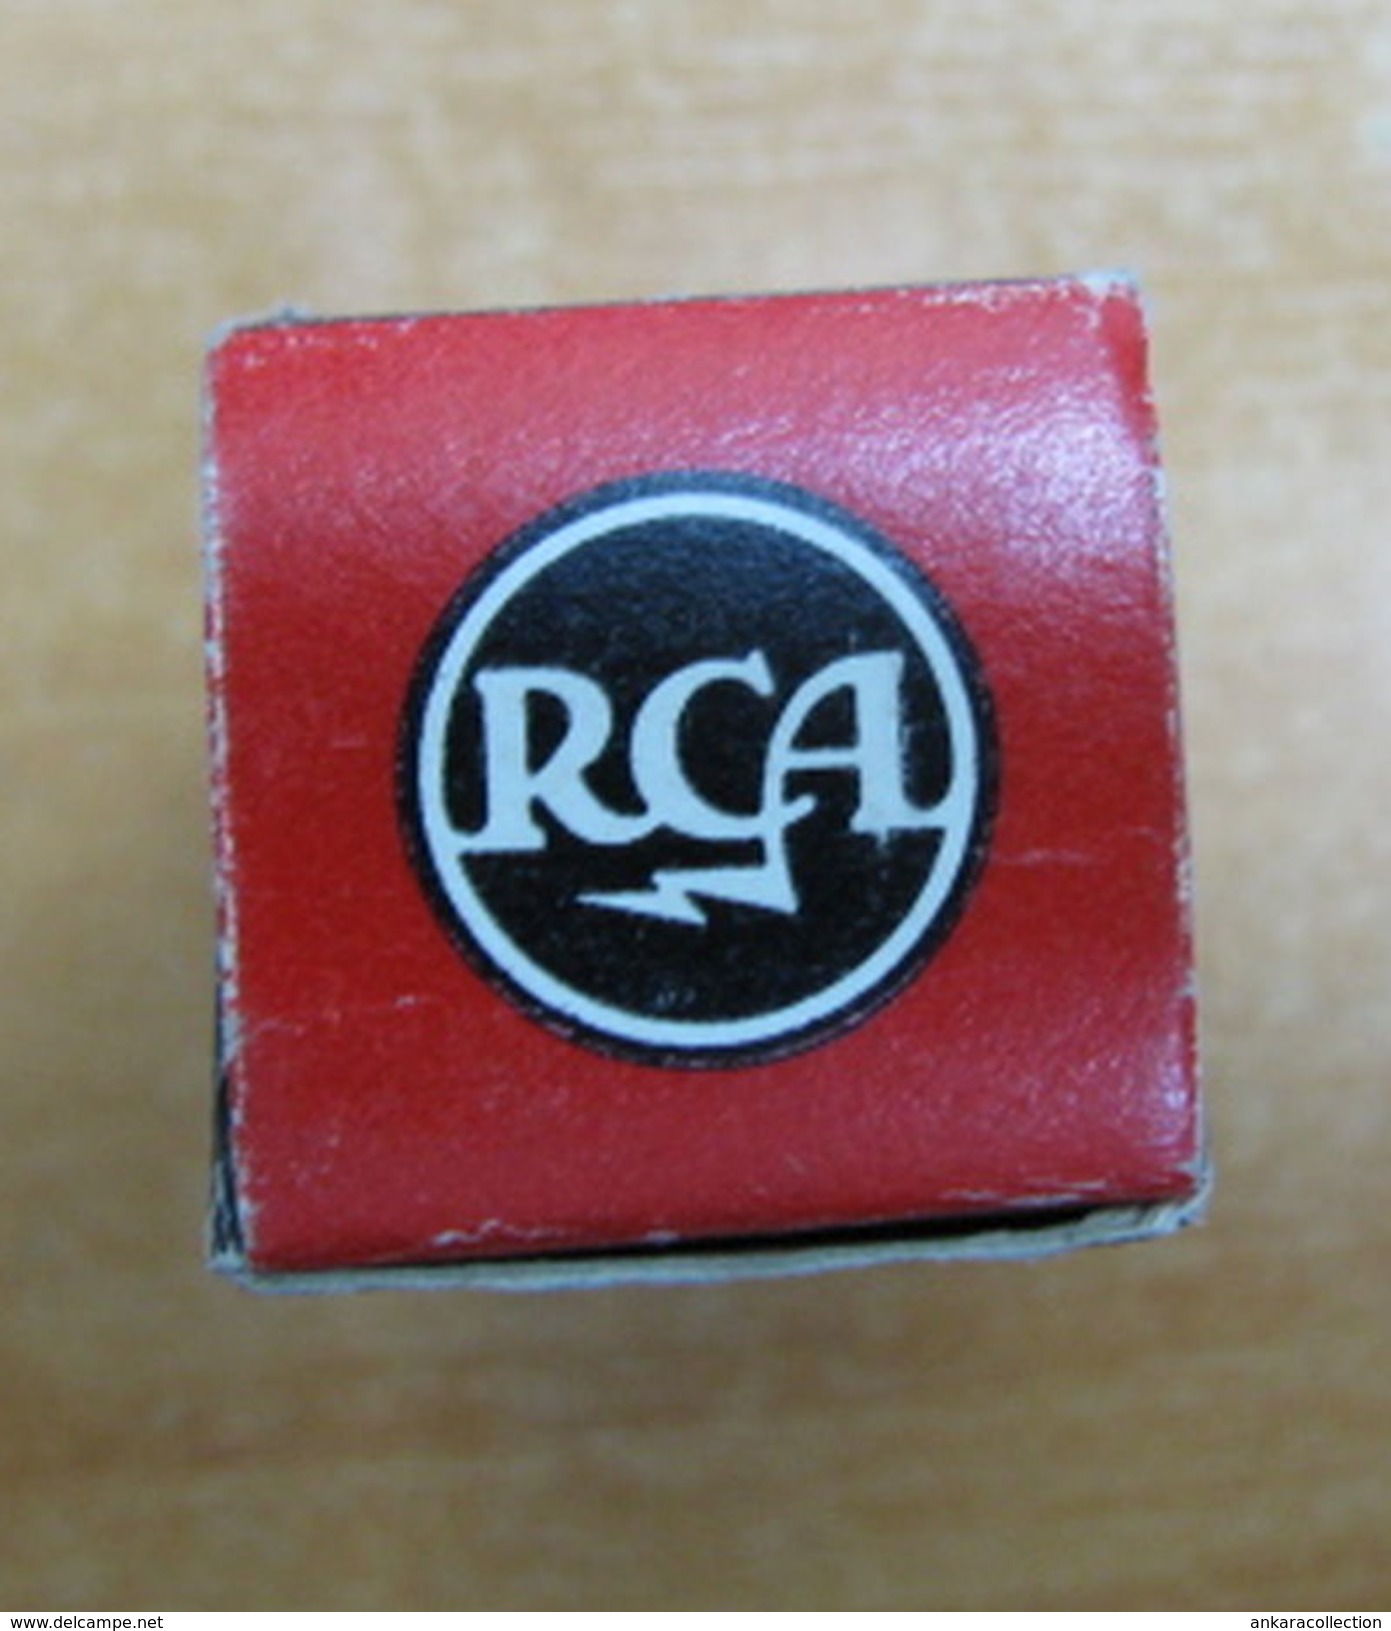 AC - RCA RADIOTRON ELECTRON TUBE MADE IN USA